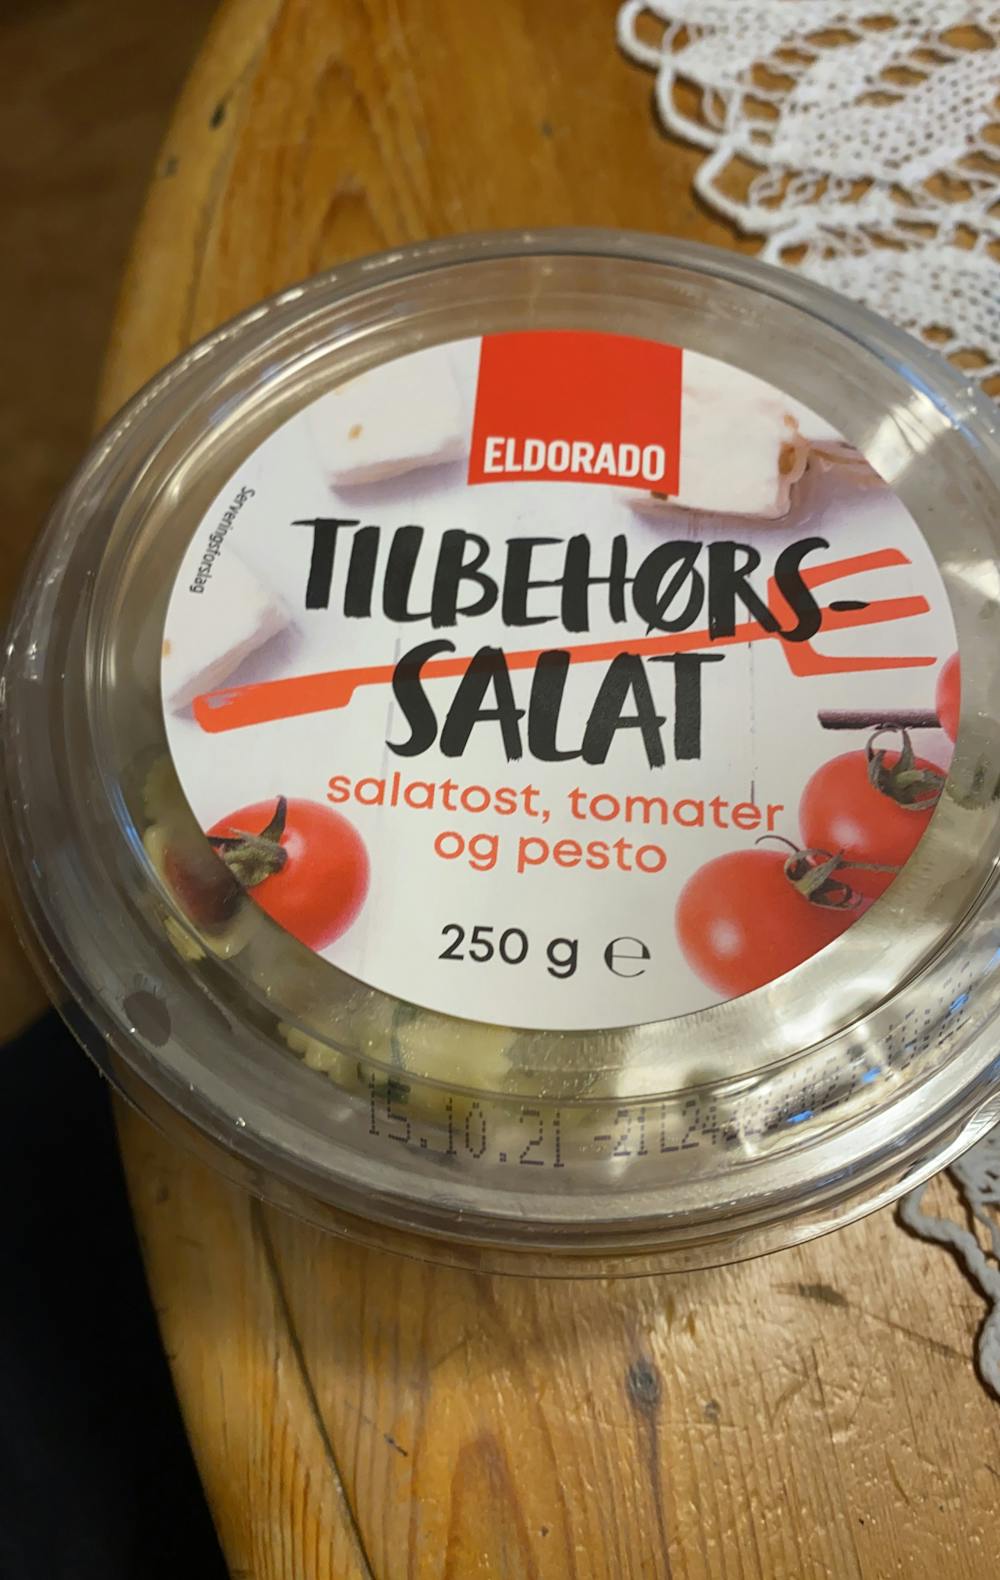 Tilbehørssalat salatost, tomater og pesto, Eldorado